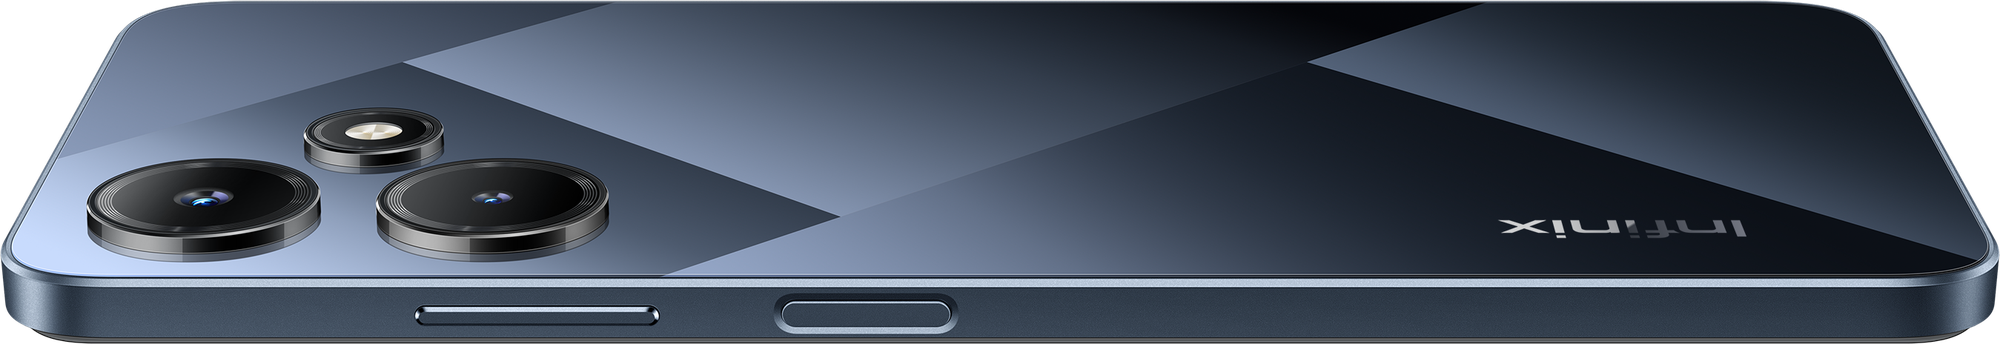 Смартфон Infinix HOT 30i 4+128 GB Mirror Black